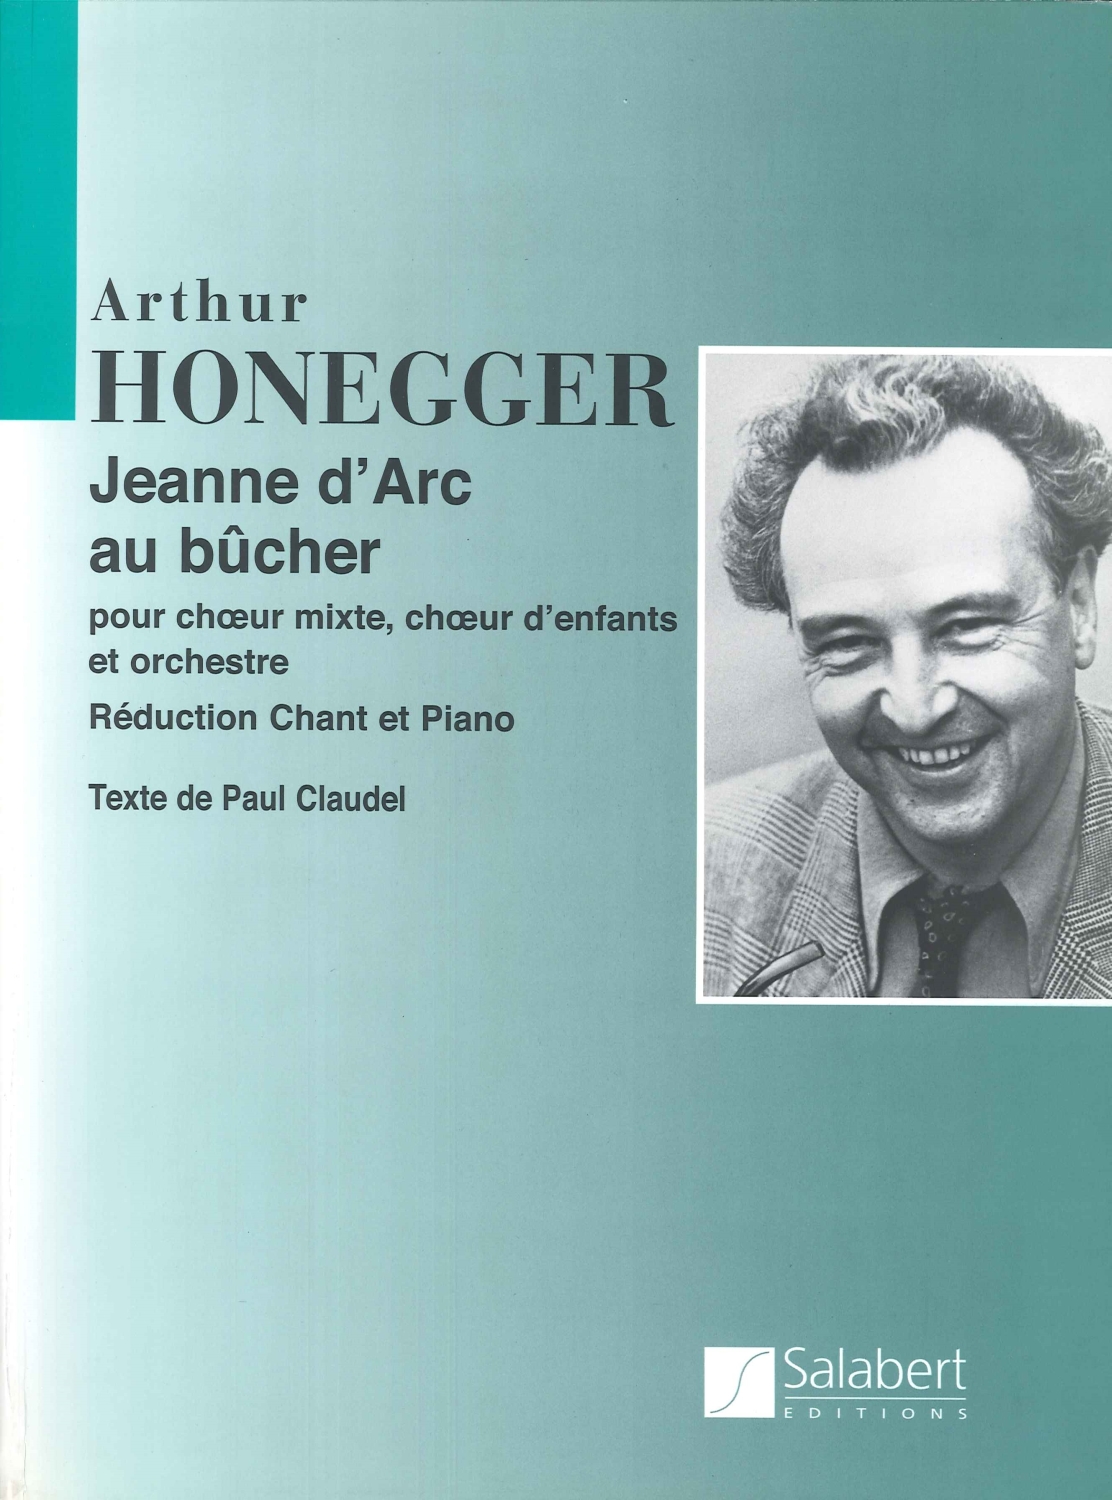 arthur-honegger-jeanne-darc-au-bucher-gemch-orch-__0001.JPG